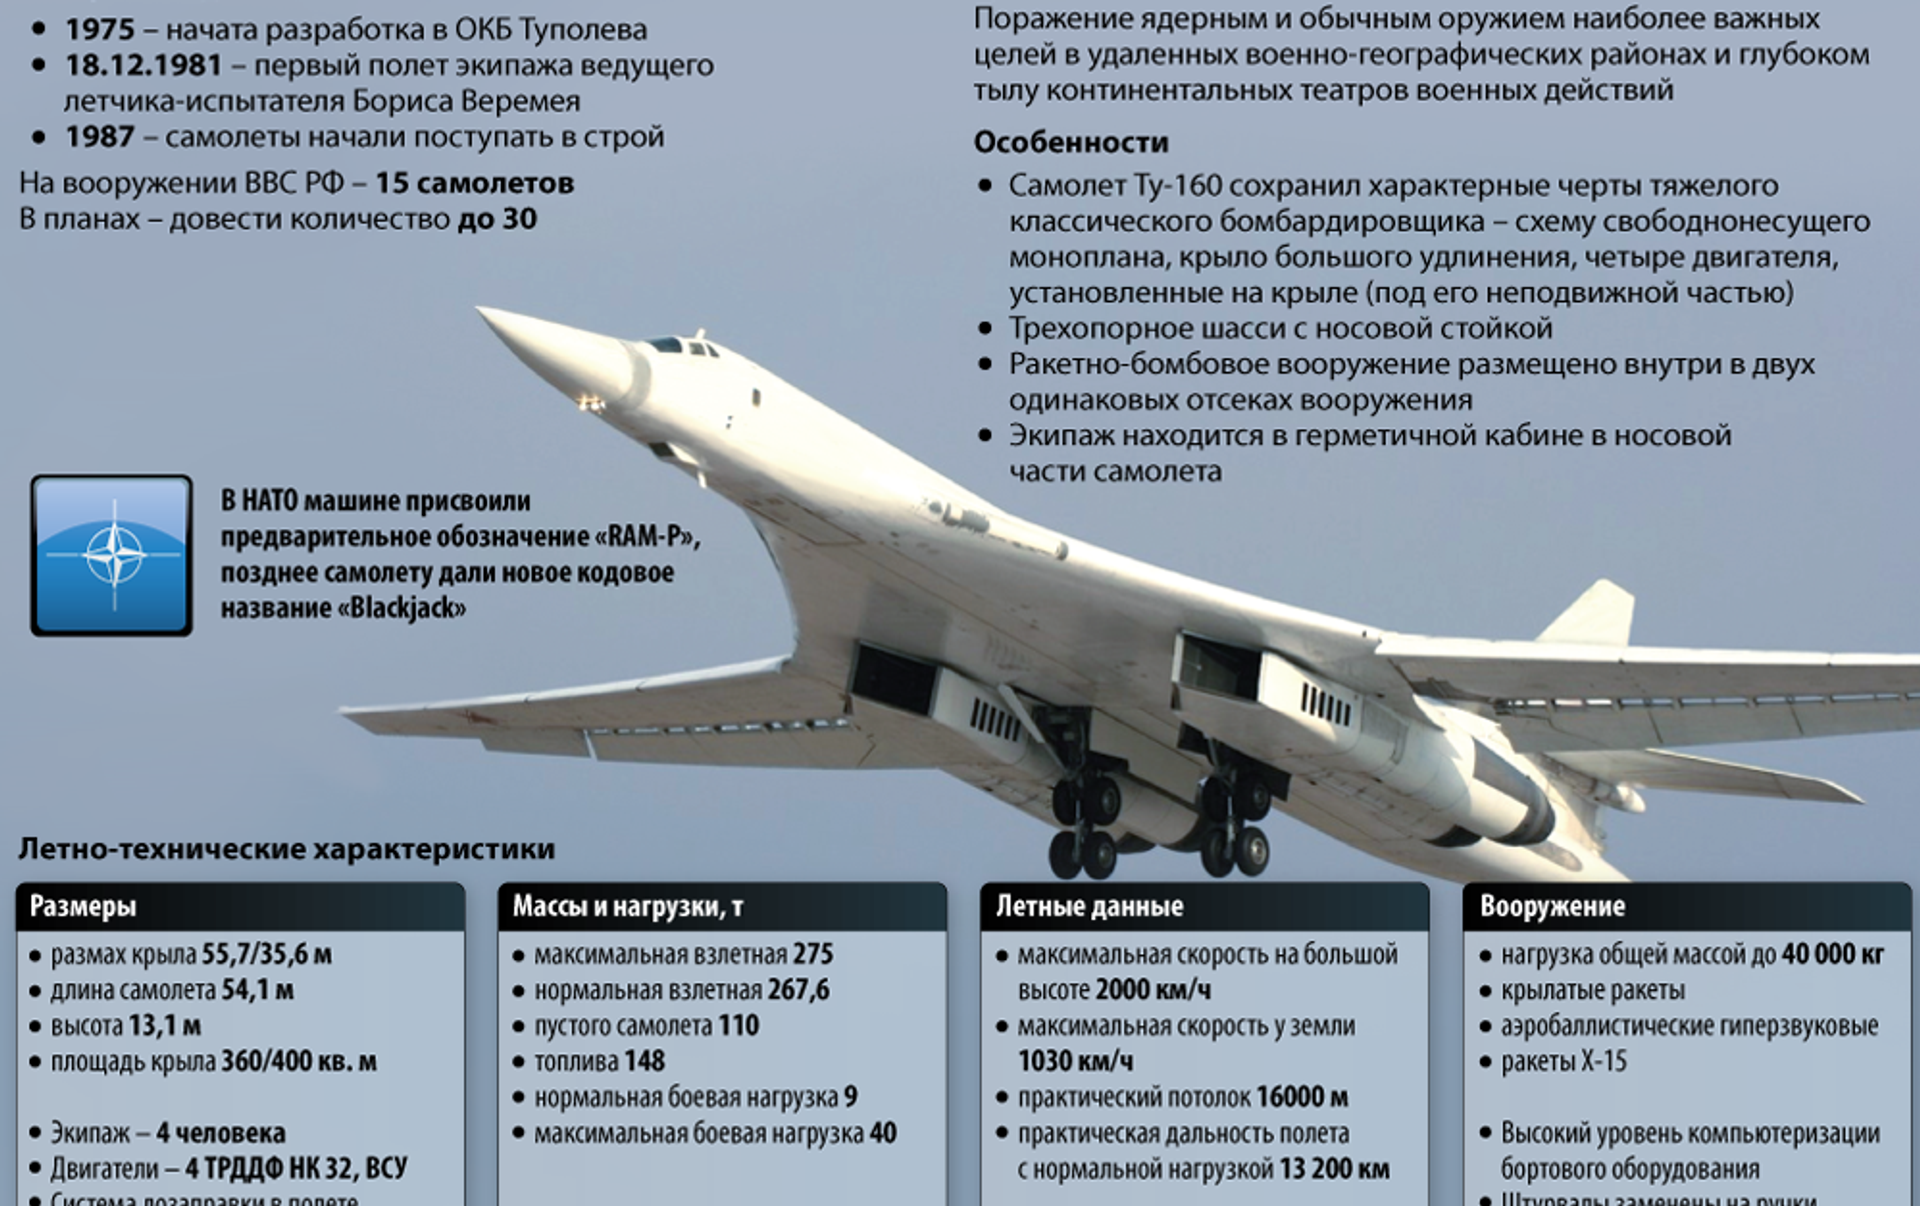 Белый лебедь высота. Белый лебедь самолет ту 160 характеристики. Технические характеристики самолета ту 160 белый лебедь. Стратегический бомбардировщик ту-160 белый лебедь. Ту-160 сверхзвуковой самолёт.